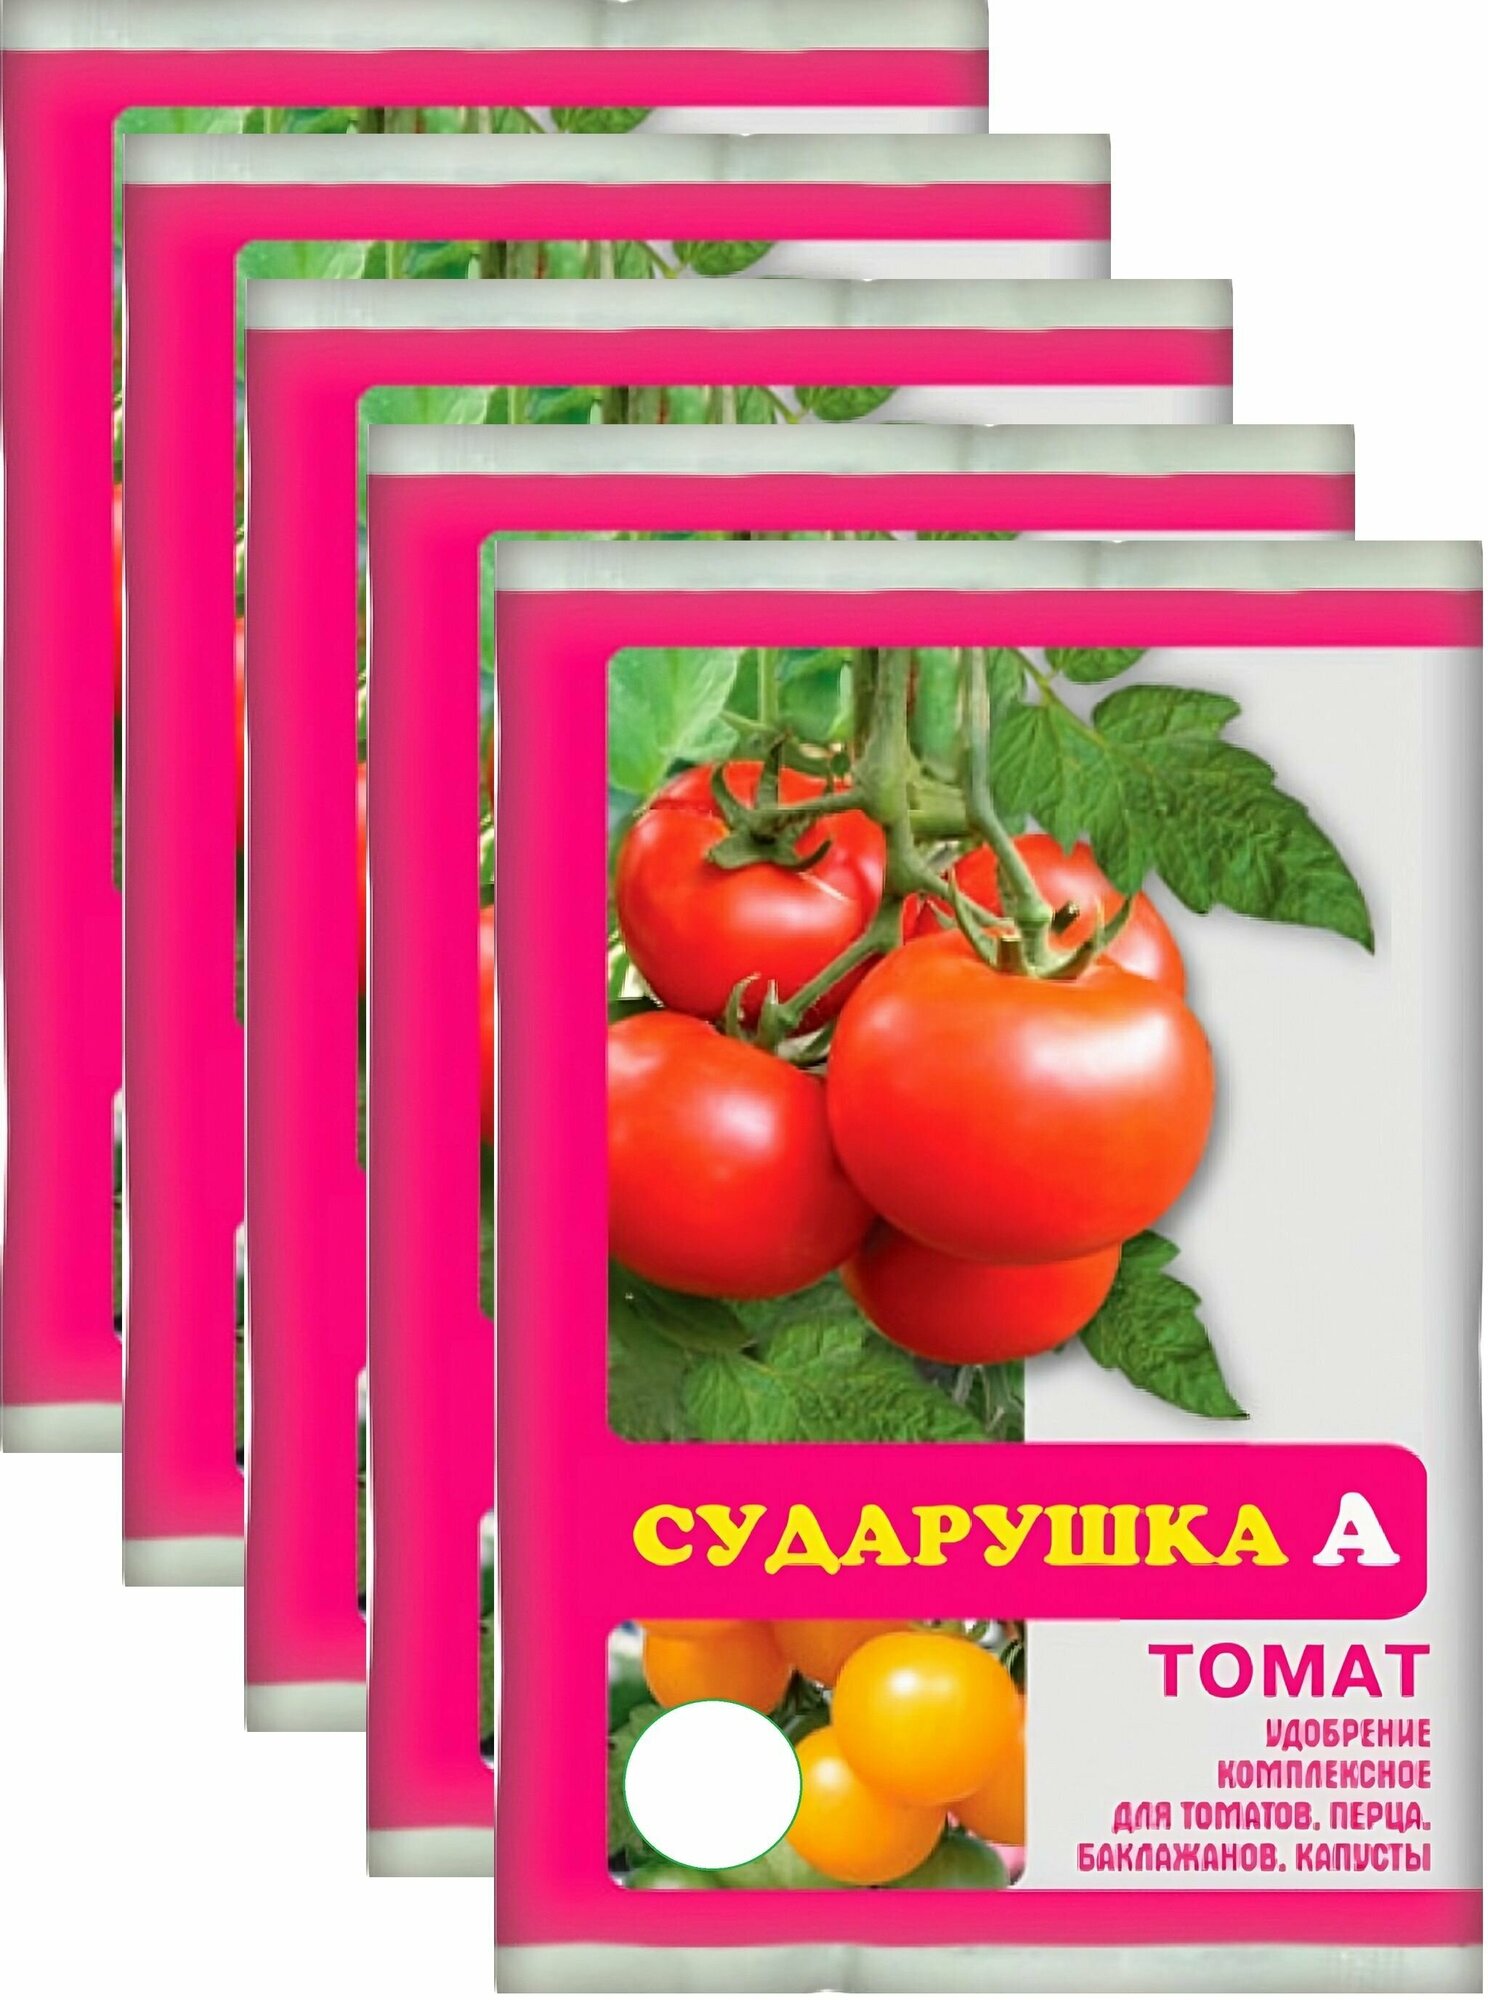 Удобрение для томатов "Сударушка", 5х60 г, подходит для перцев, баклажанов и других овощей. Стимулирует рост плодов, повышает их вкусовую ценность - фотография № 1